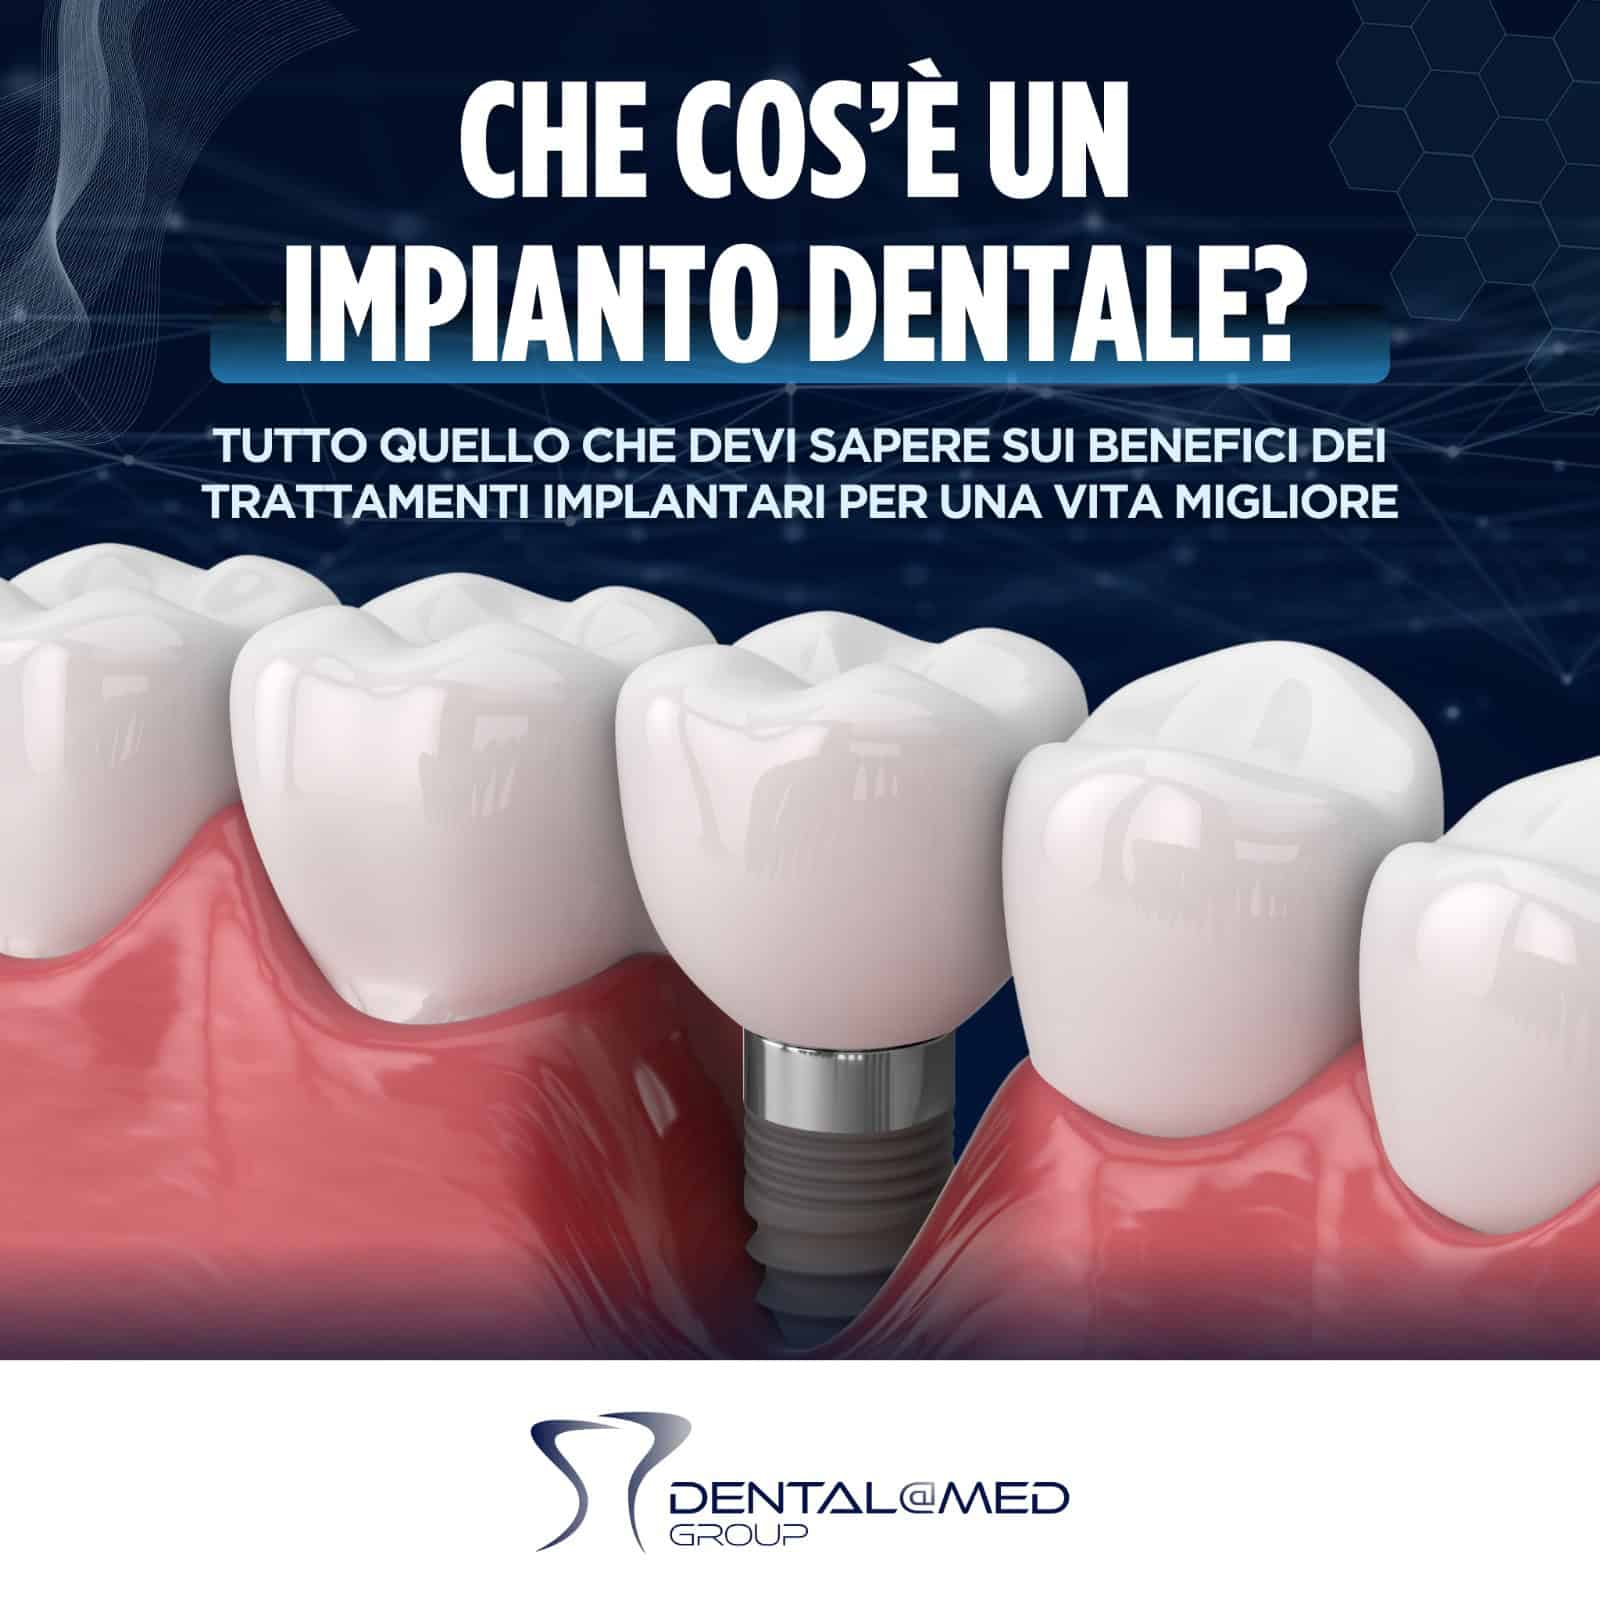 Immagine promozionale per il gruppo dental@med, contenente una grafica dettagliata di un impianto dentale nelle gengive con testo in italiano che parla dei vantaggi degli impianti dentali.